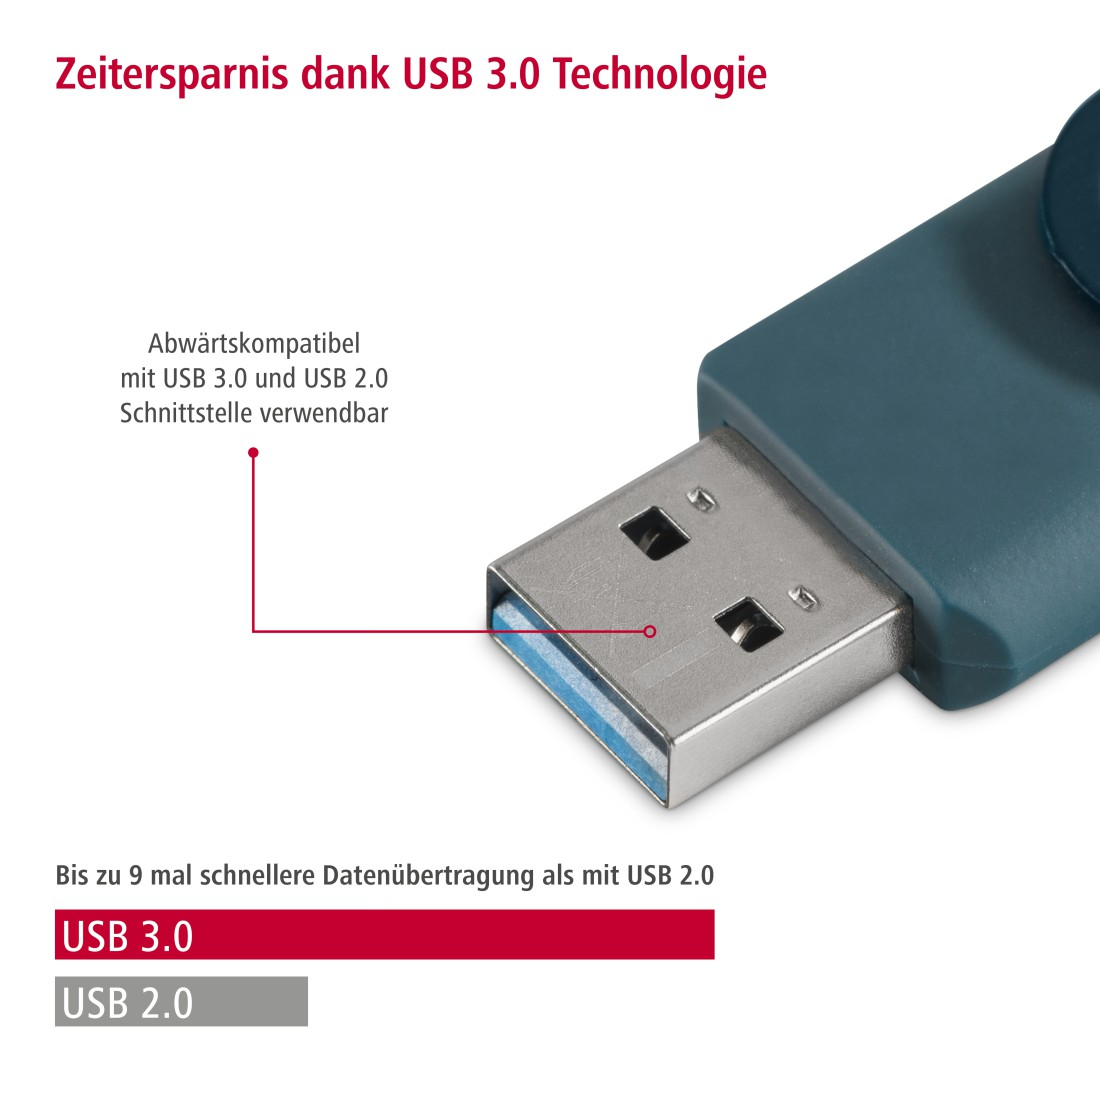 HAMA Rotate USB-Stick, 90 GB, Petrol Blau MB/s, 256